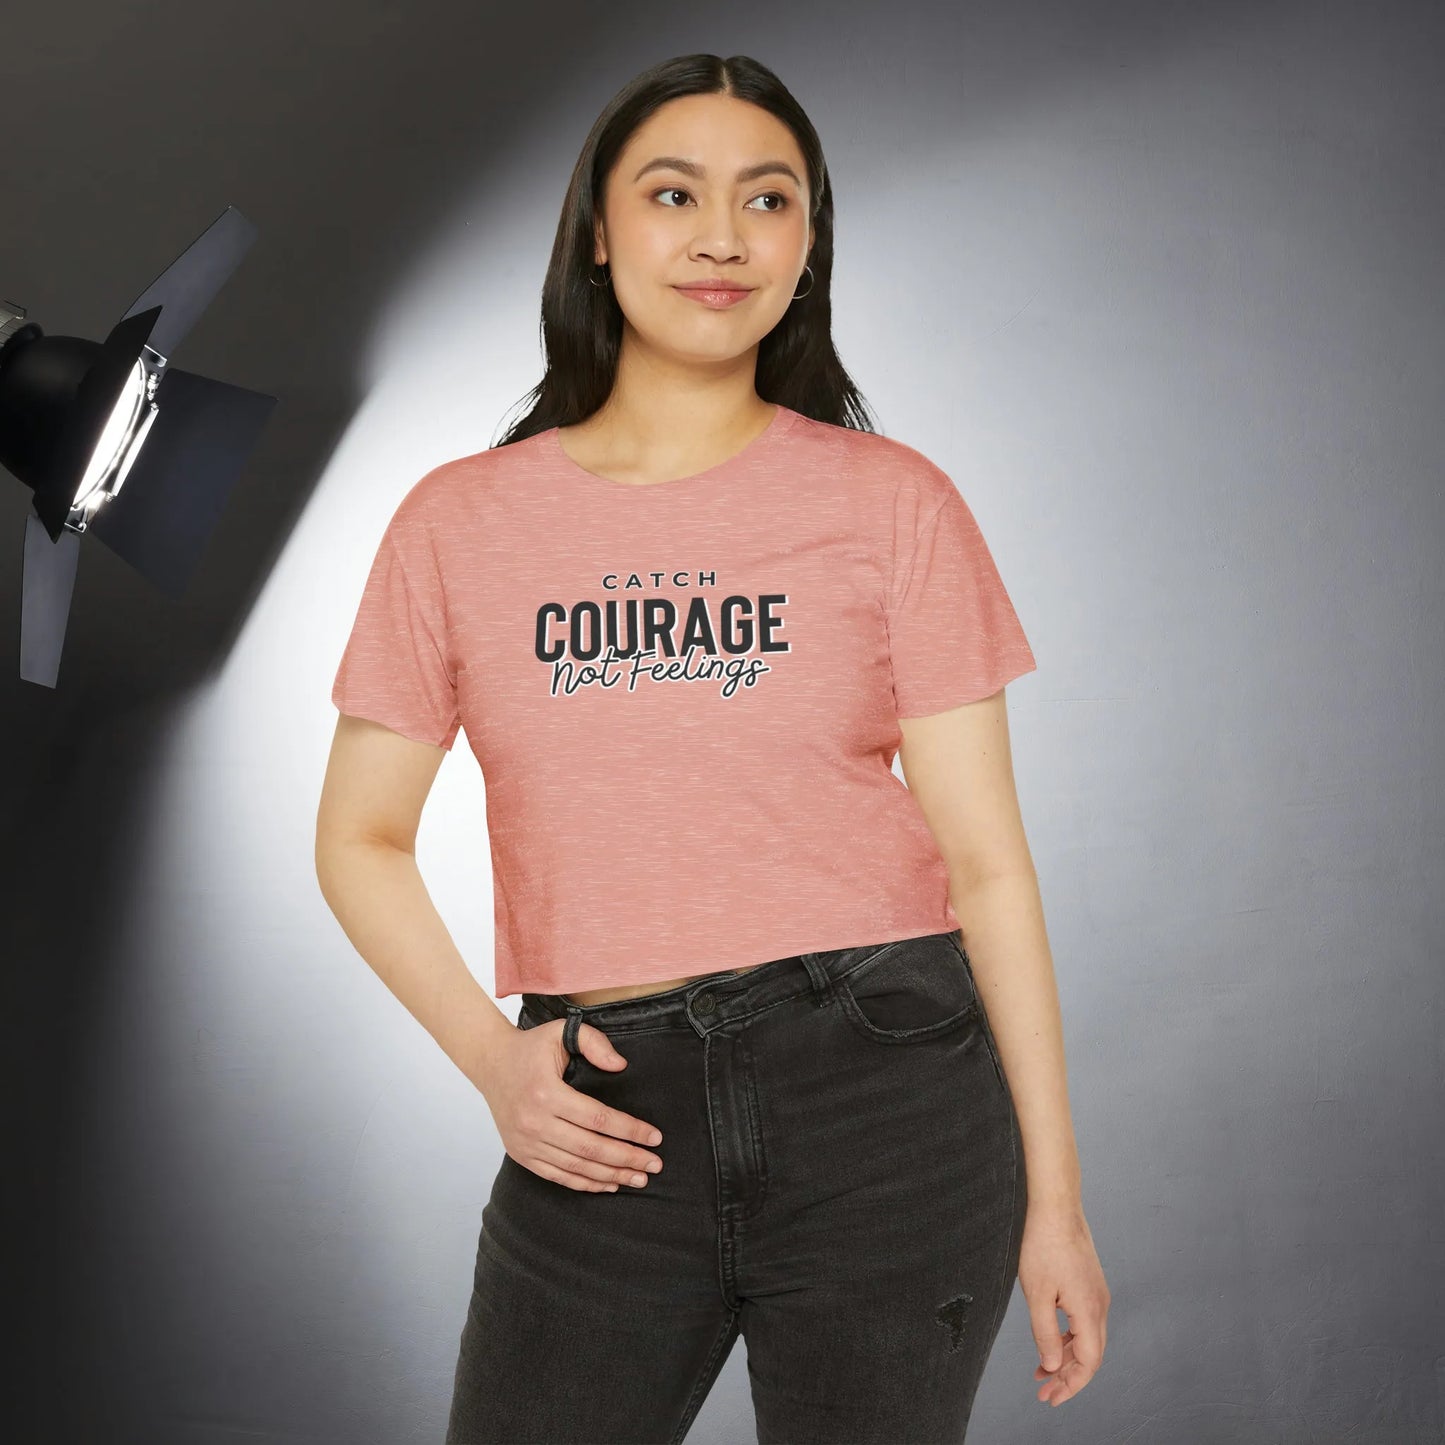 Catch Courage Not Feelings Crop Top - Trendy Women's Top Pale Pink